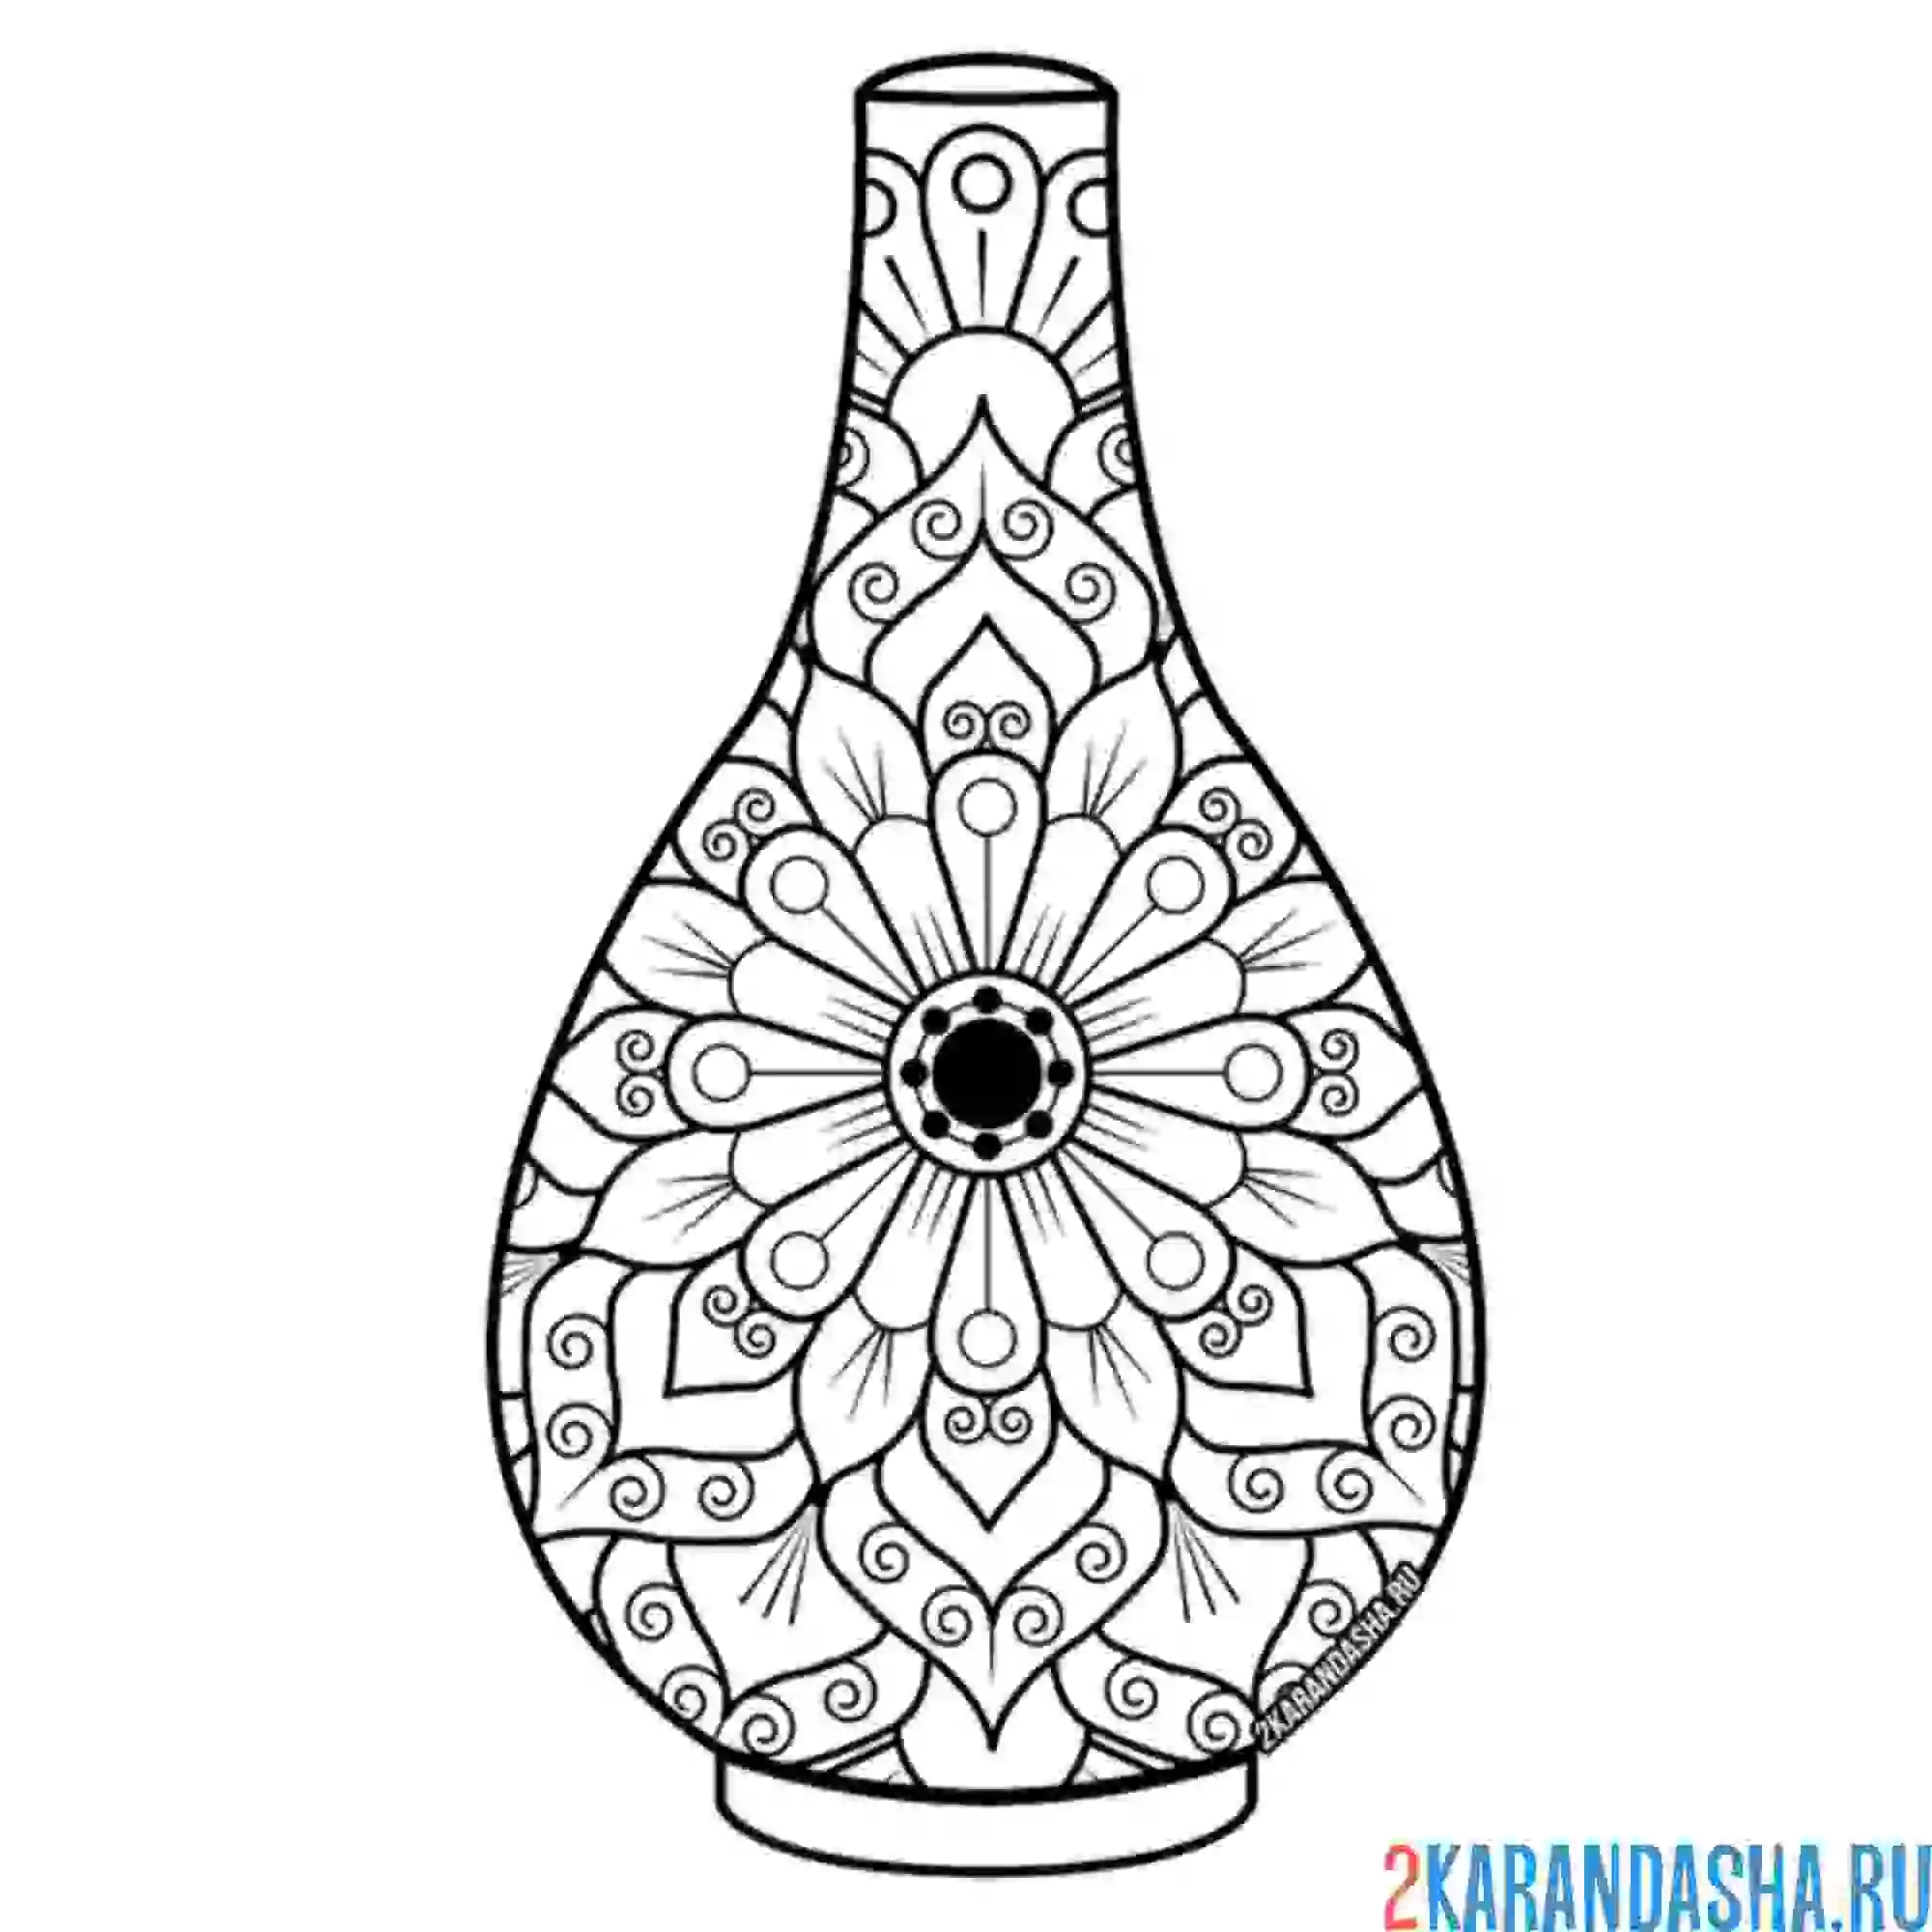 Раскраска ваза с индийским мотивом